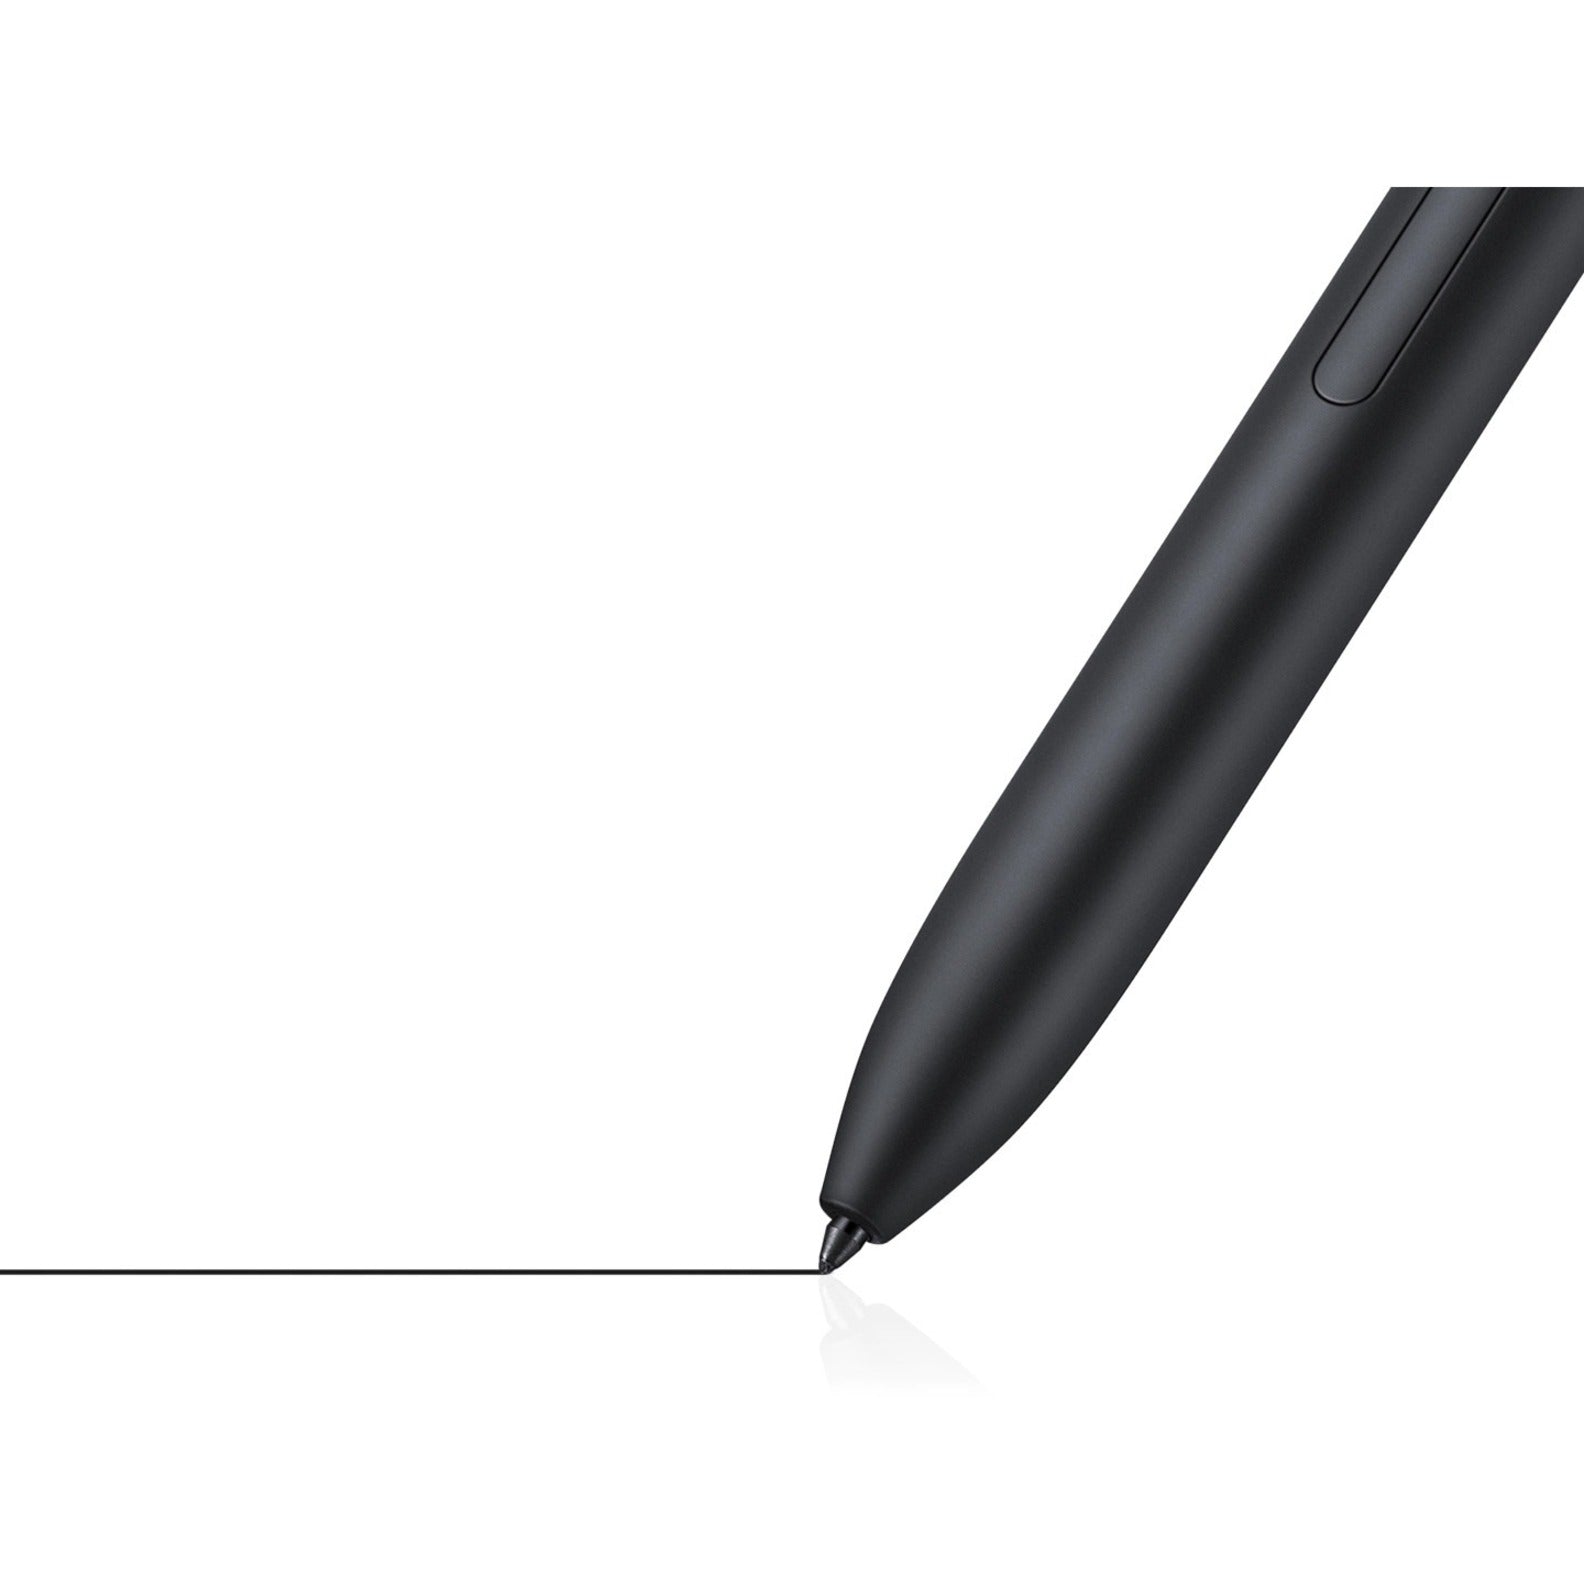 Galaxy Tab S7 FE 5G, 64GB, Mystic Black (AT&T) Tablets - SM-T738UZKAATT